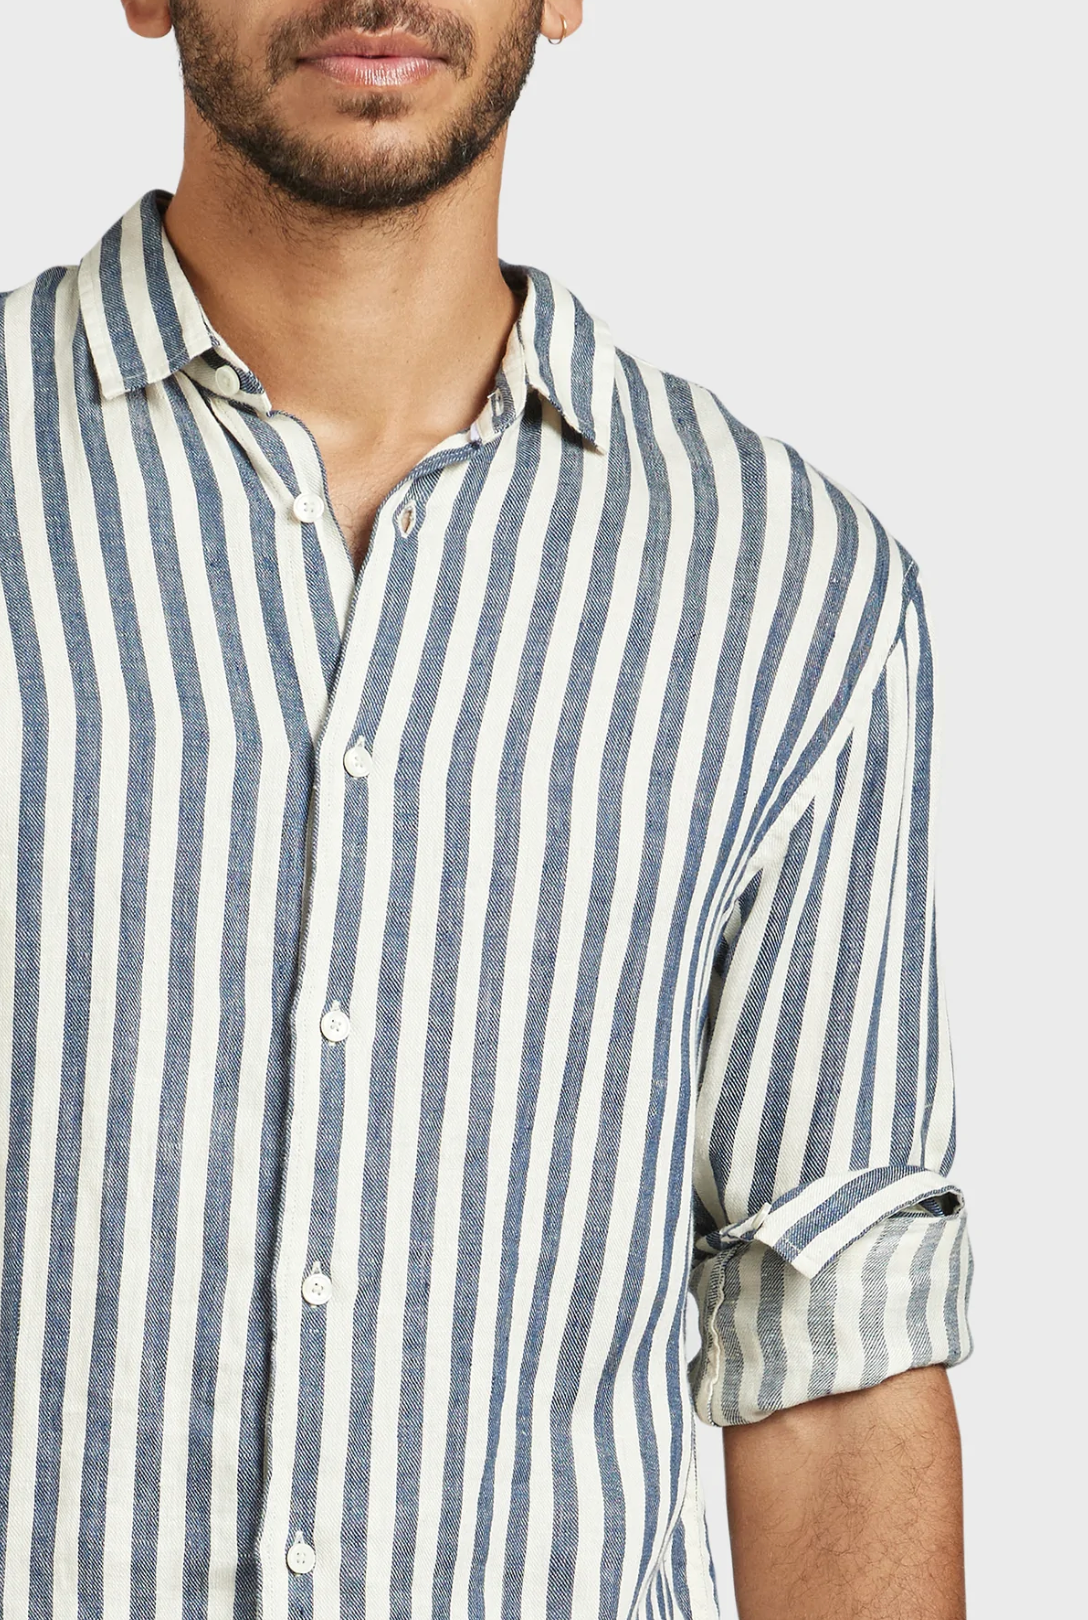 Academy Brand Farrelly Linen Shirt - Mainstreet Clothing